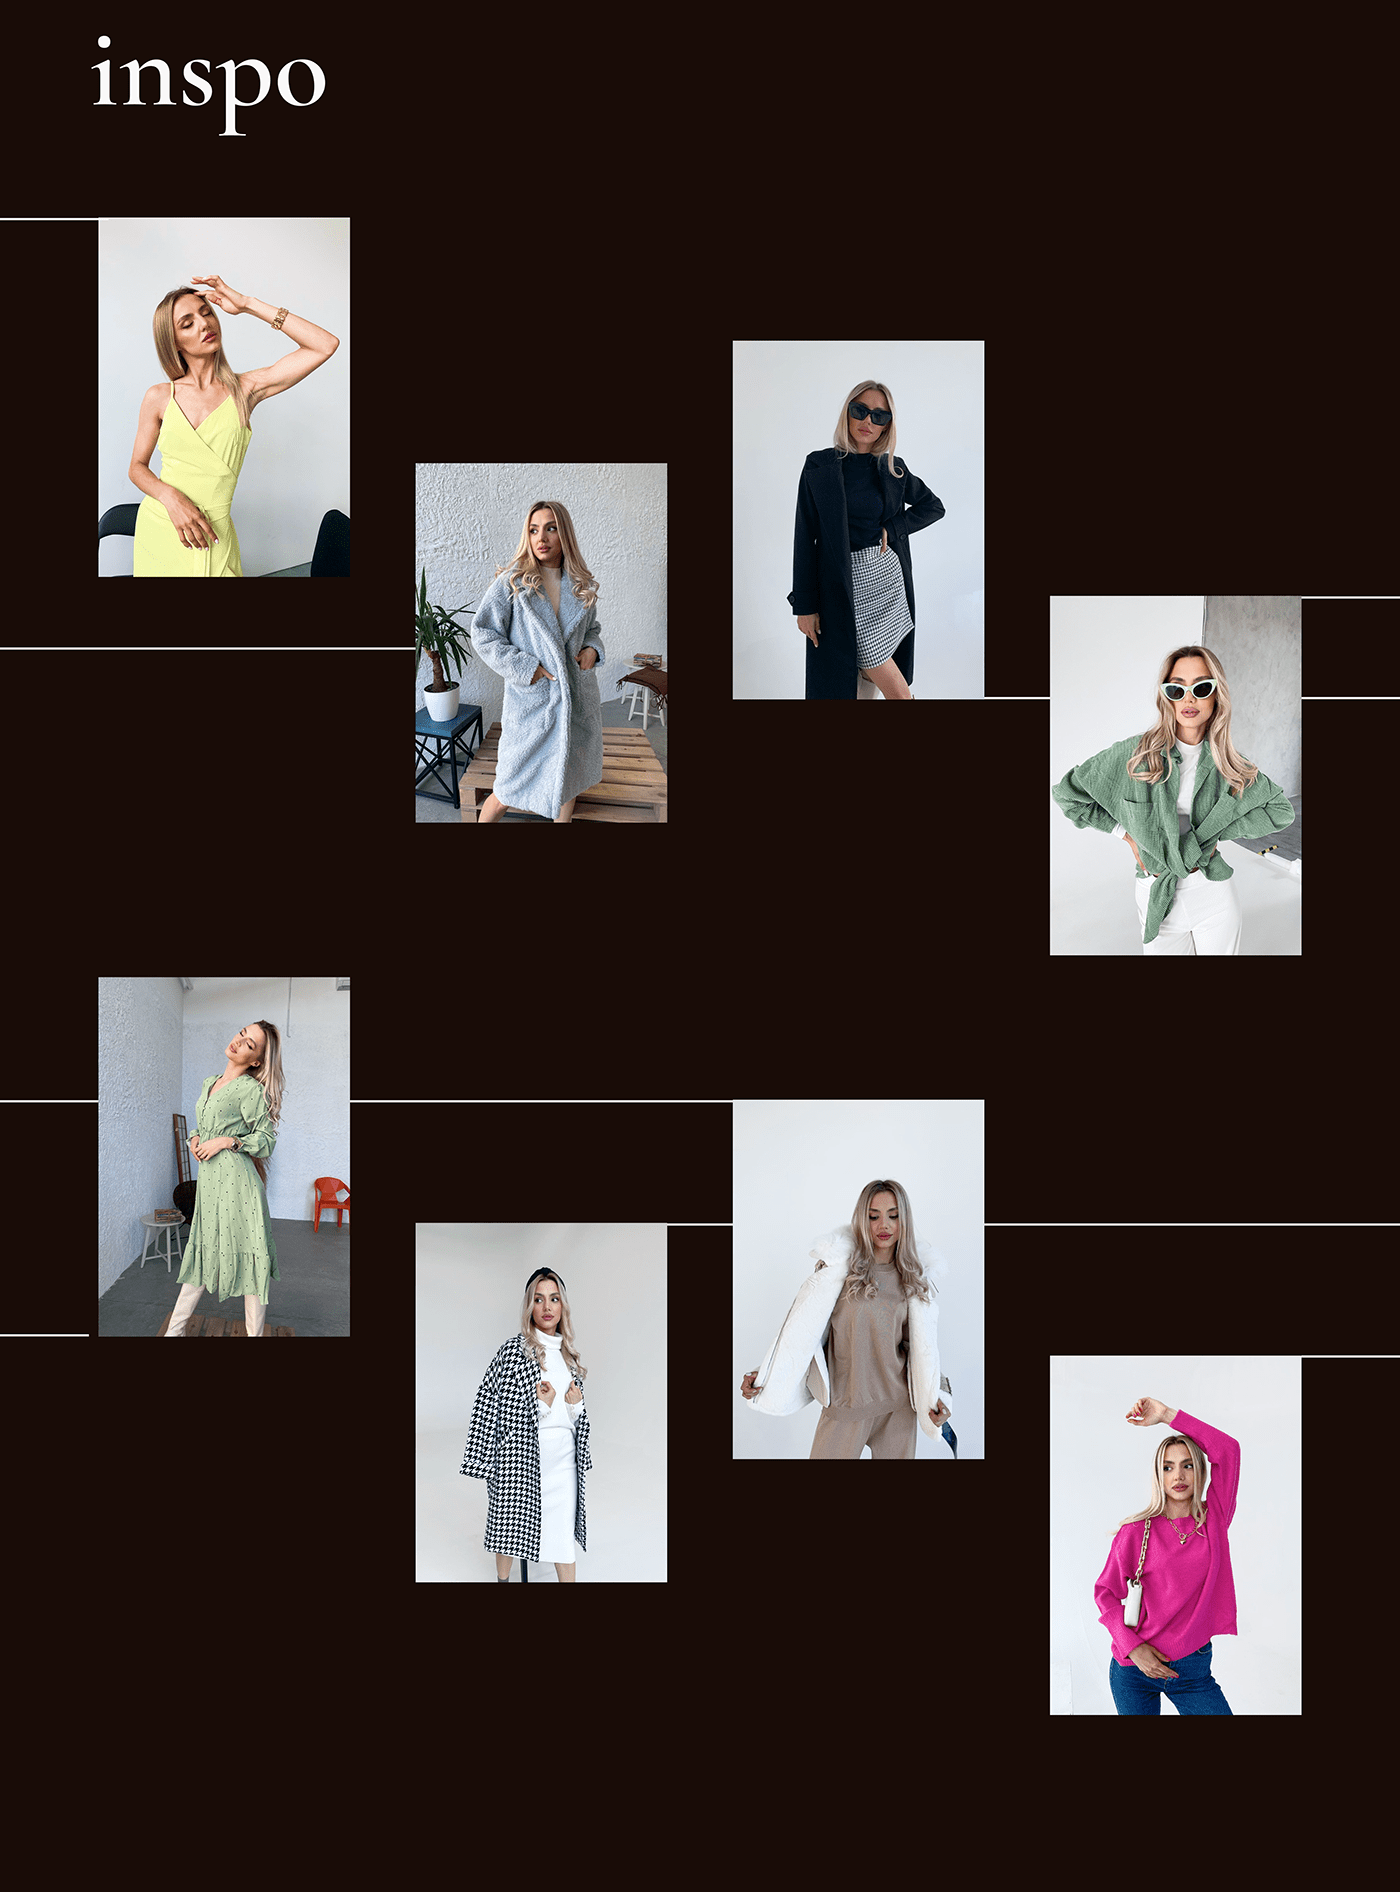 beauty clothes concept Fashion  Figma iu ux online store UI/UX Web Design  Website